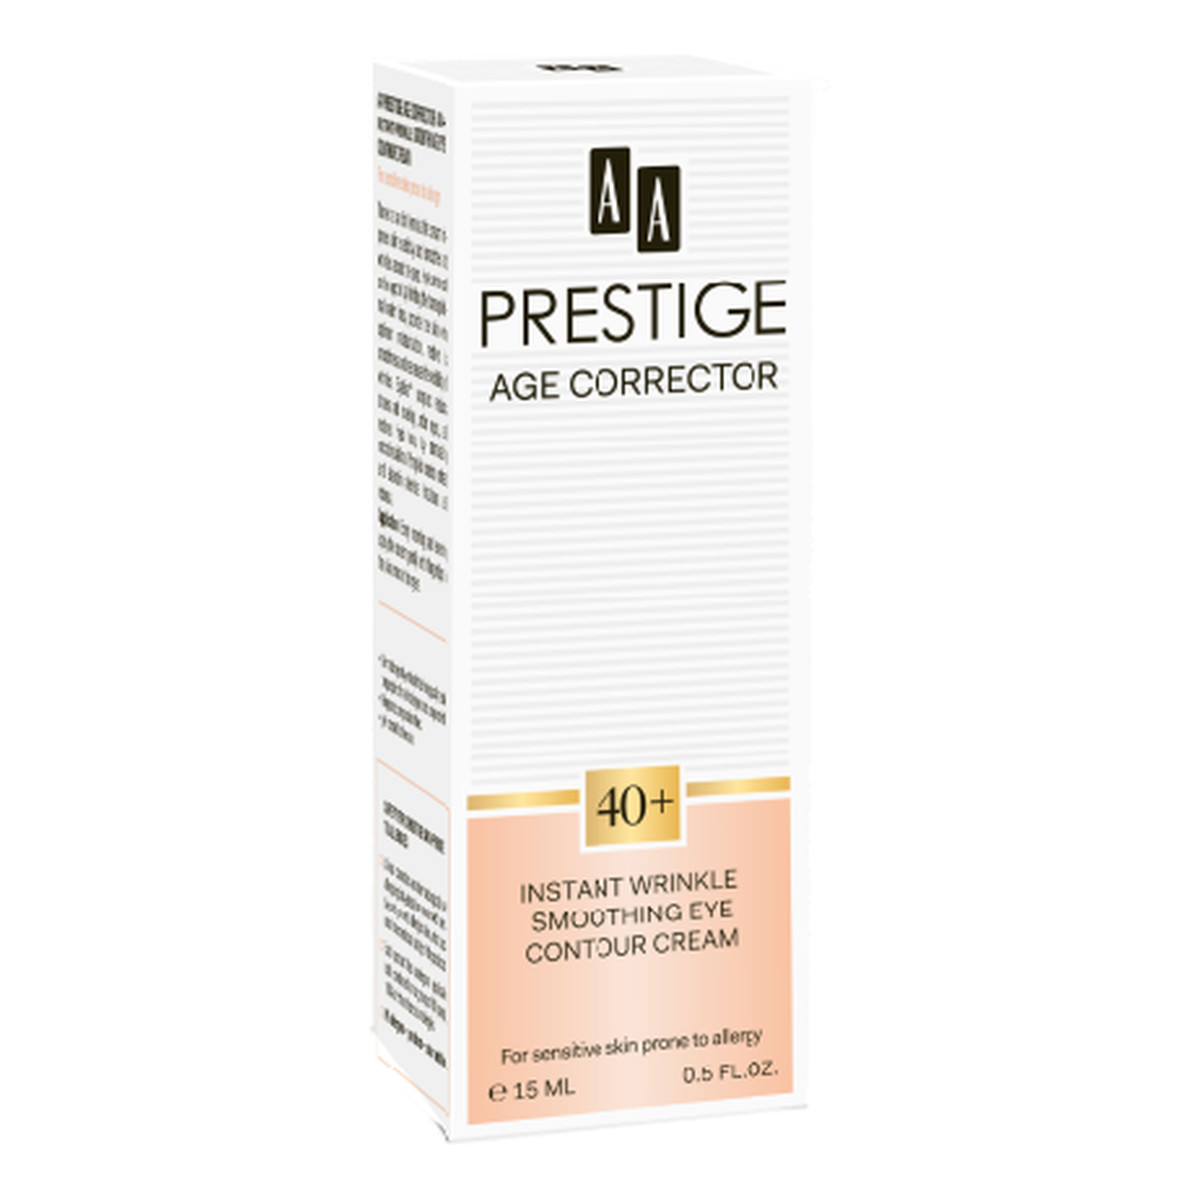 AA Prestige Age Corrector Concentrate 40+ Krem Pod Oczy Błyskawiczne Wygładzenie 15ml